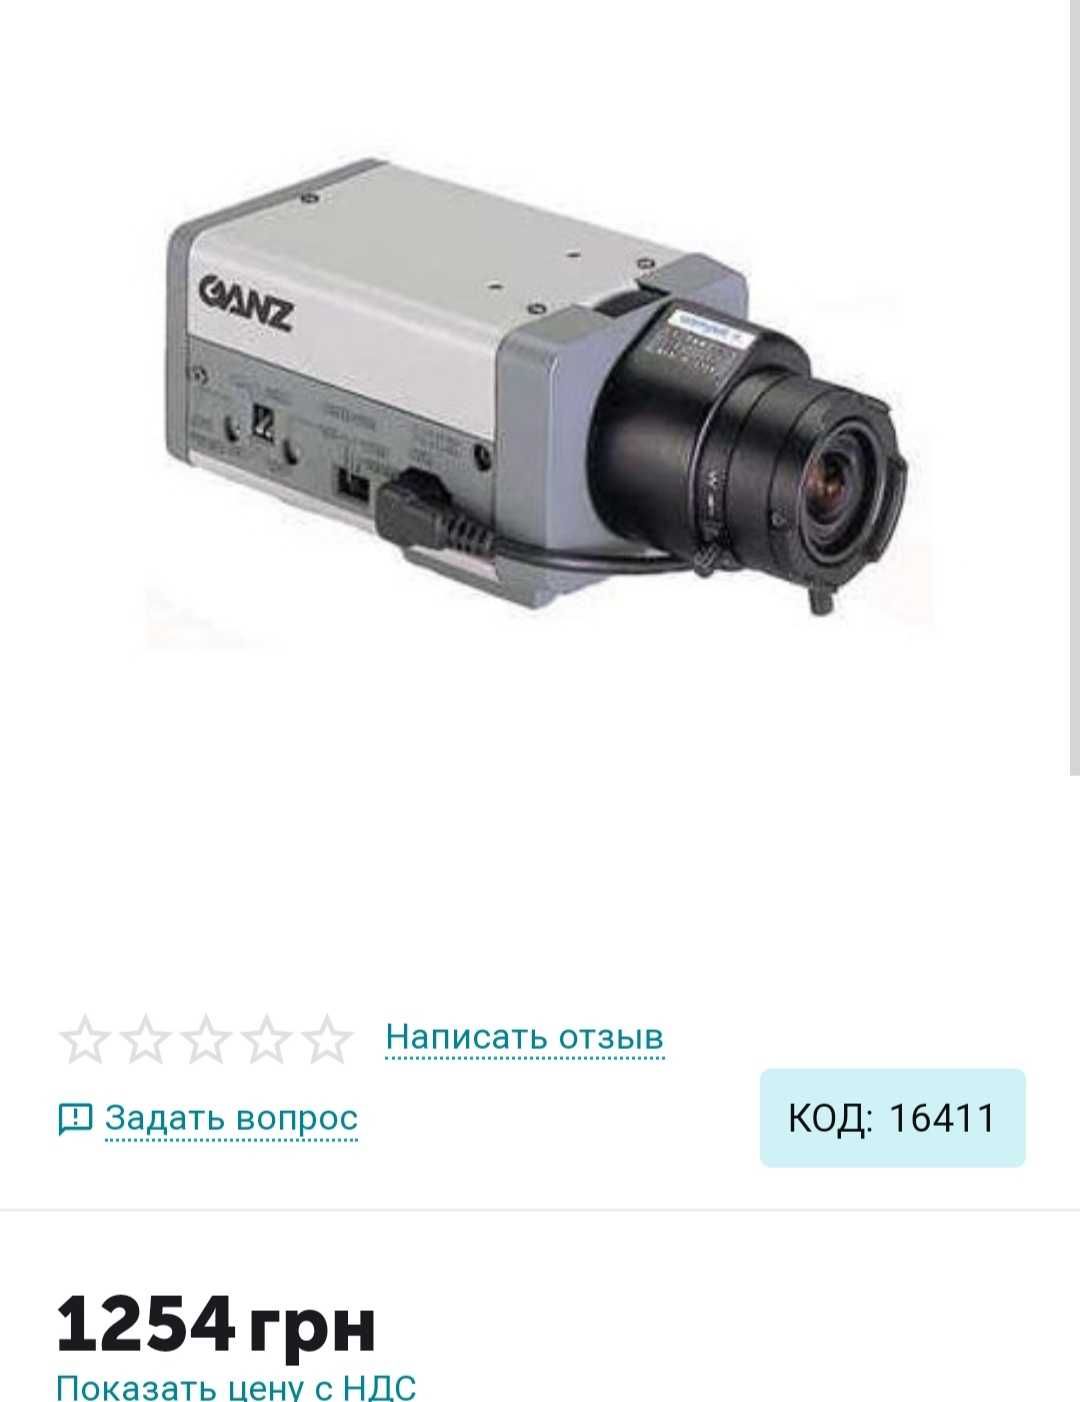 Продам камеру видеонаблюдения GANZ